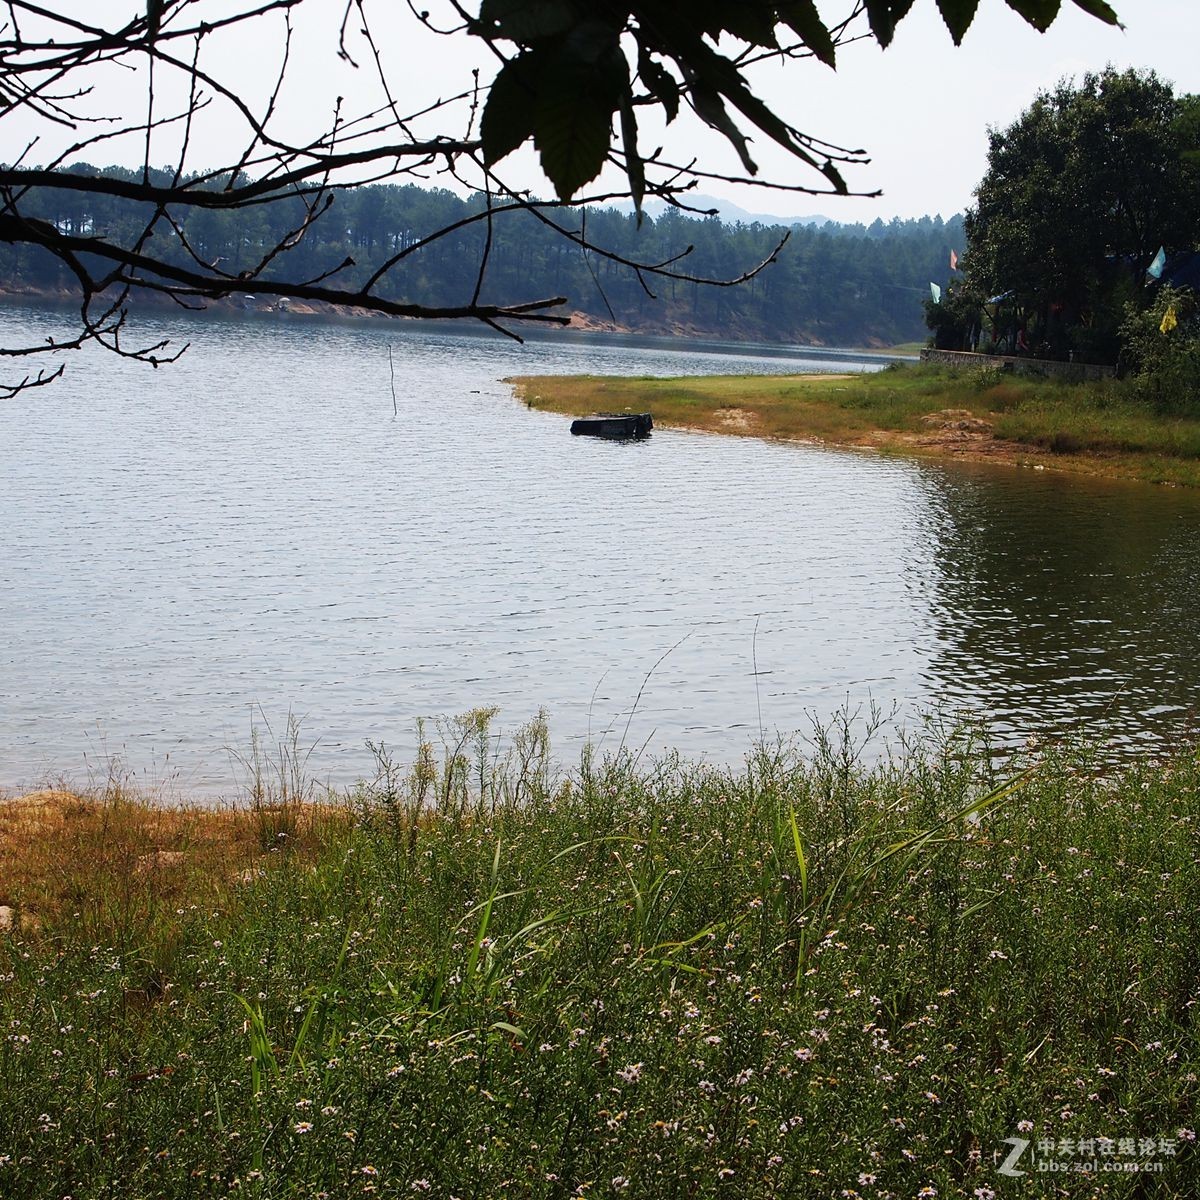 醉美铜山湖--媒体报道发现“水怪”的地方-中关村在线摄影论坛